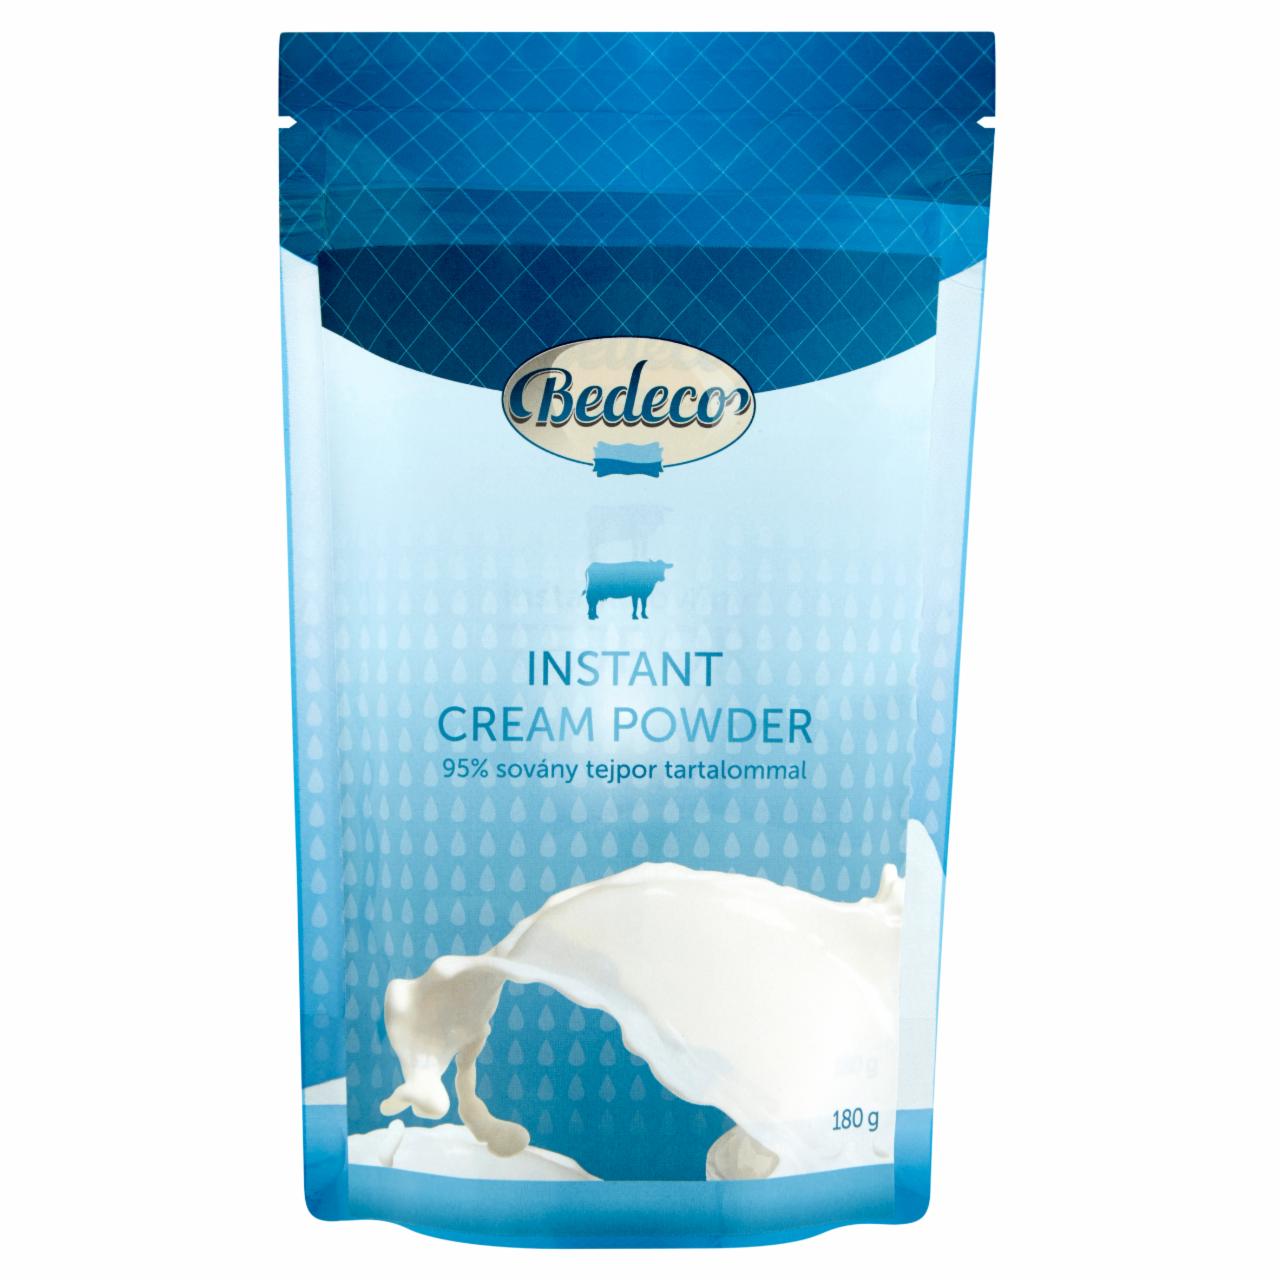 Képek - Bedeco instant alacsony zsírtartalmú tejipari alapanyag 180 g